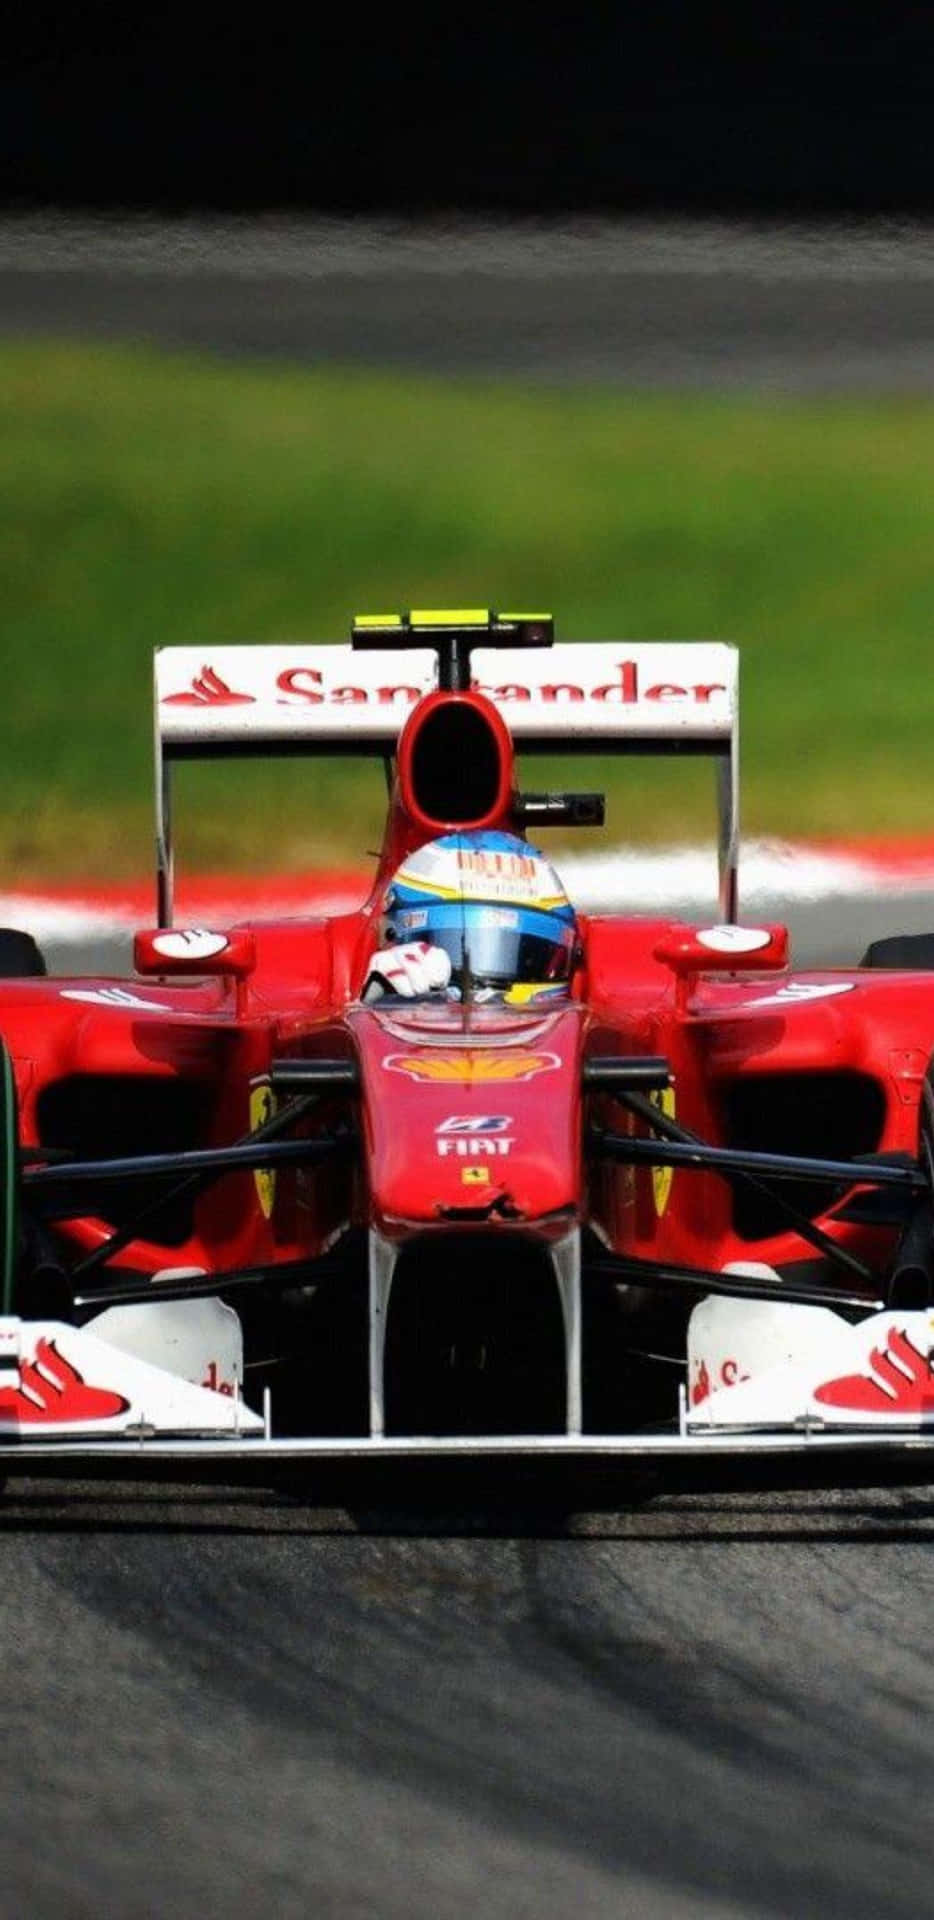 Fondode Pantalla Ferrari International Racing Car Pixel 3xl F1 2018